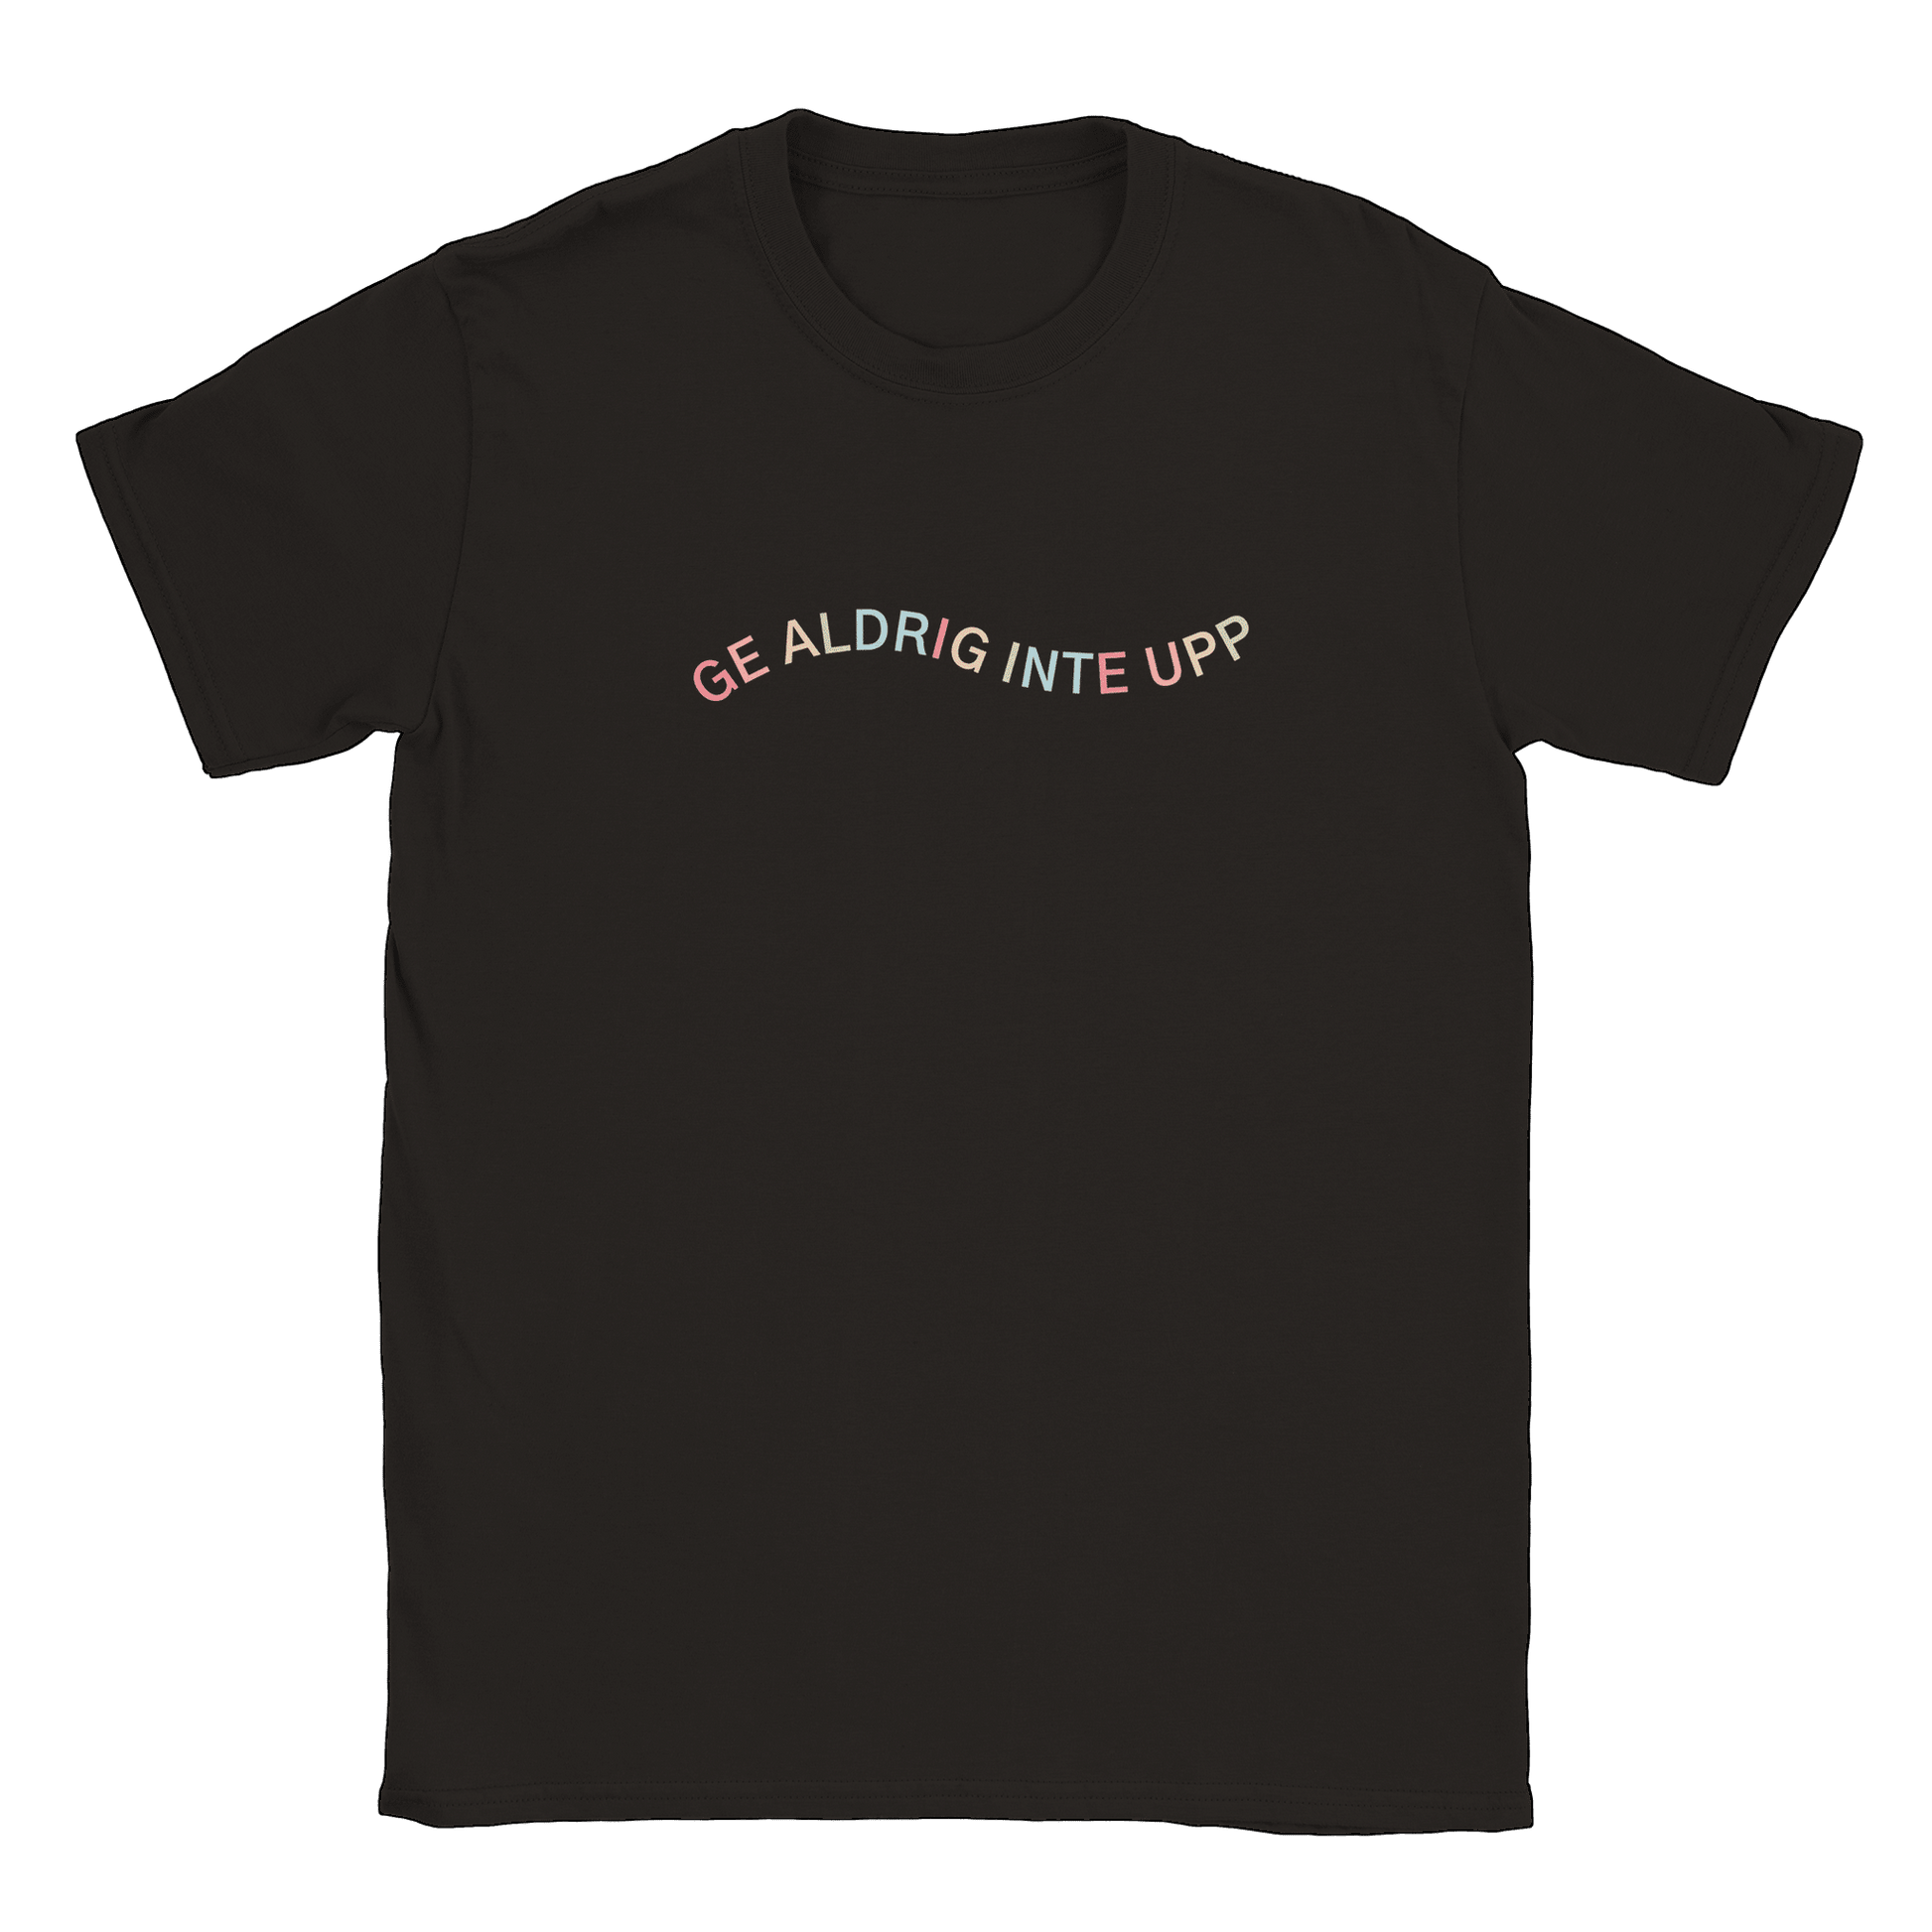 Ge aldrig inte upp - T-shirt Svart